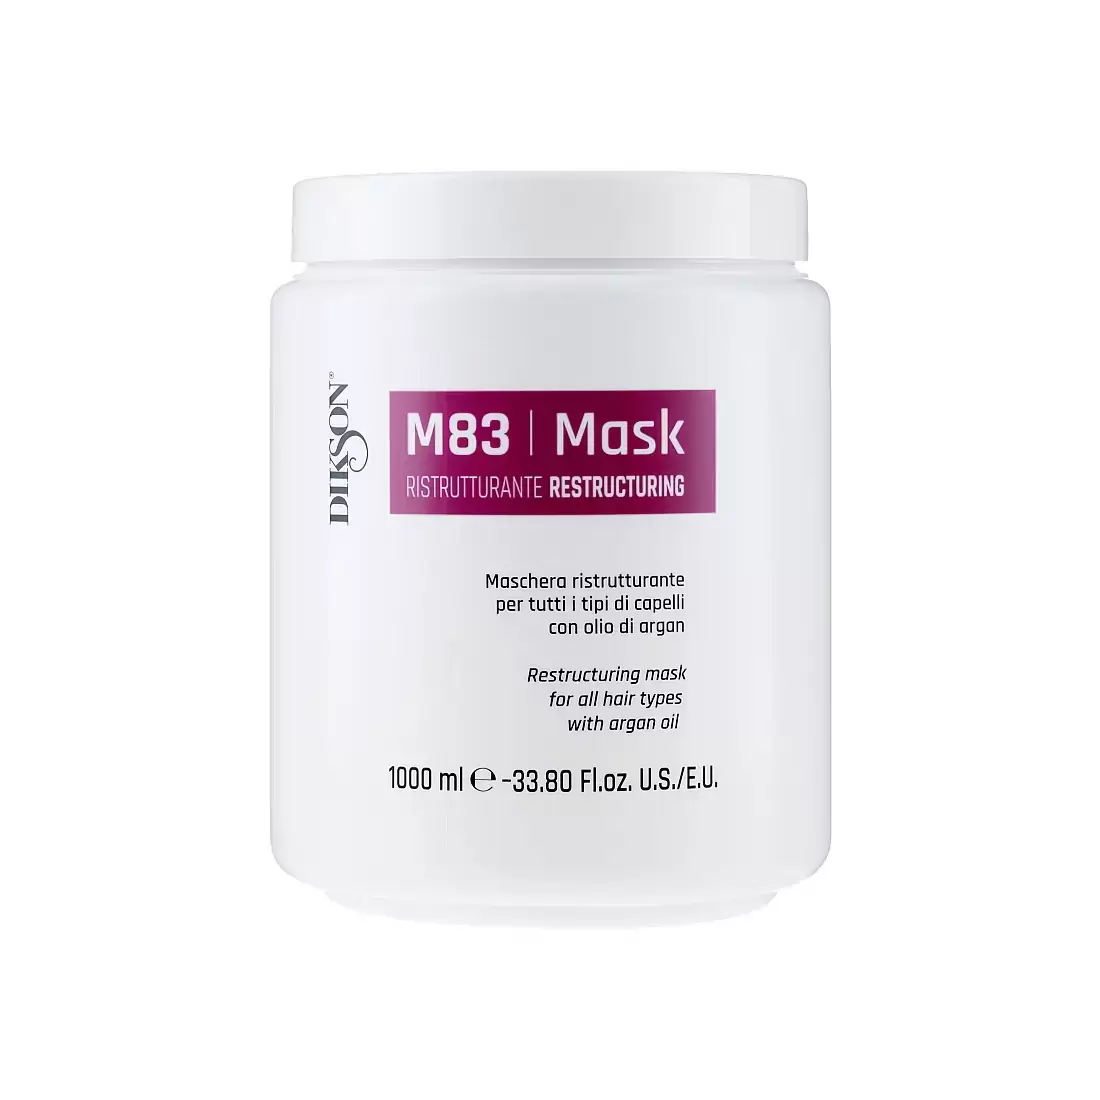 ماسک بازسازی کننده مو دیکسون مدل M83-ماسک مو M83 دیکسون-ماسک M83 دیکسون-ماسک موی دیکسون مدل M83-ماسک مو دیکسون M83